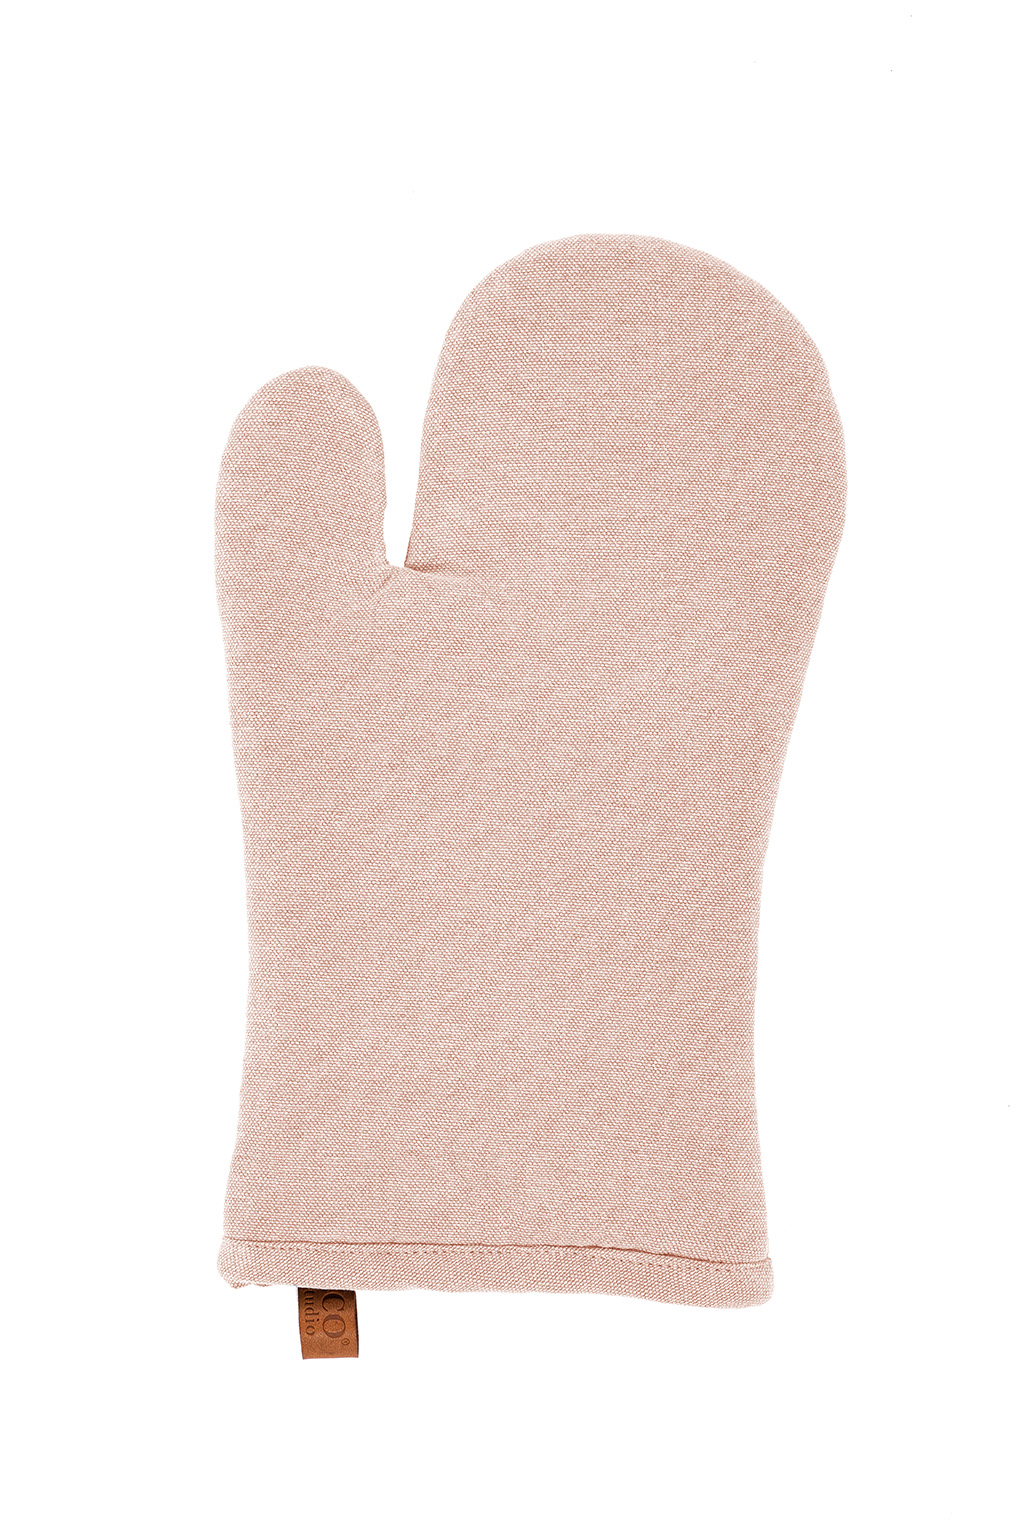 Glove HAVANA 18x32cm, pink